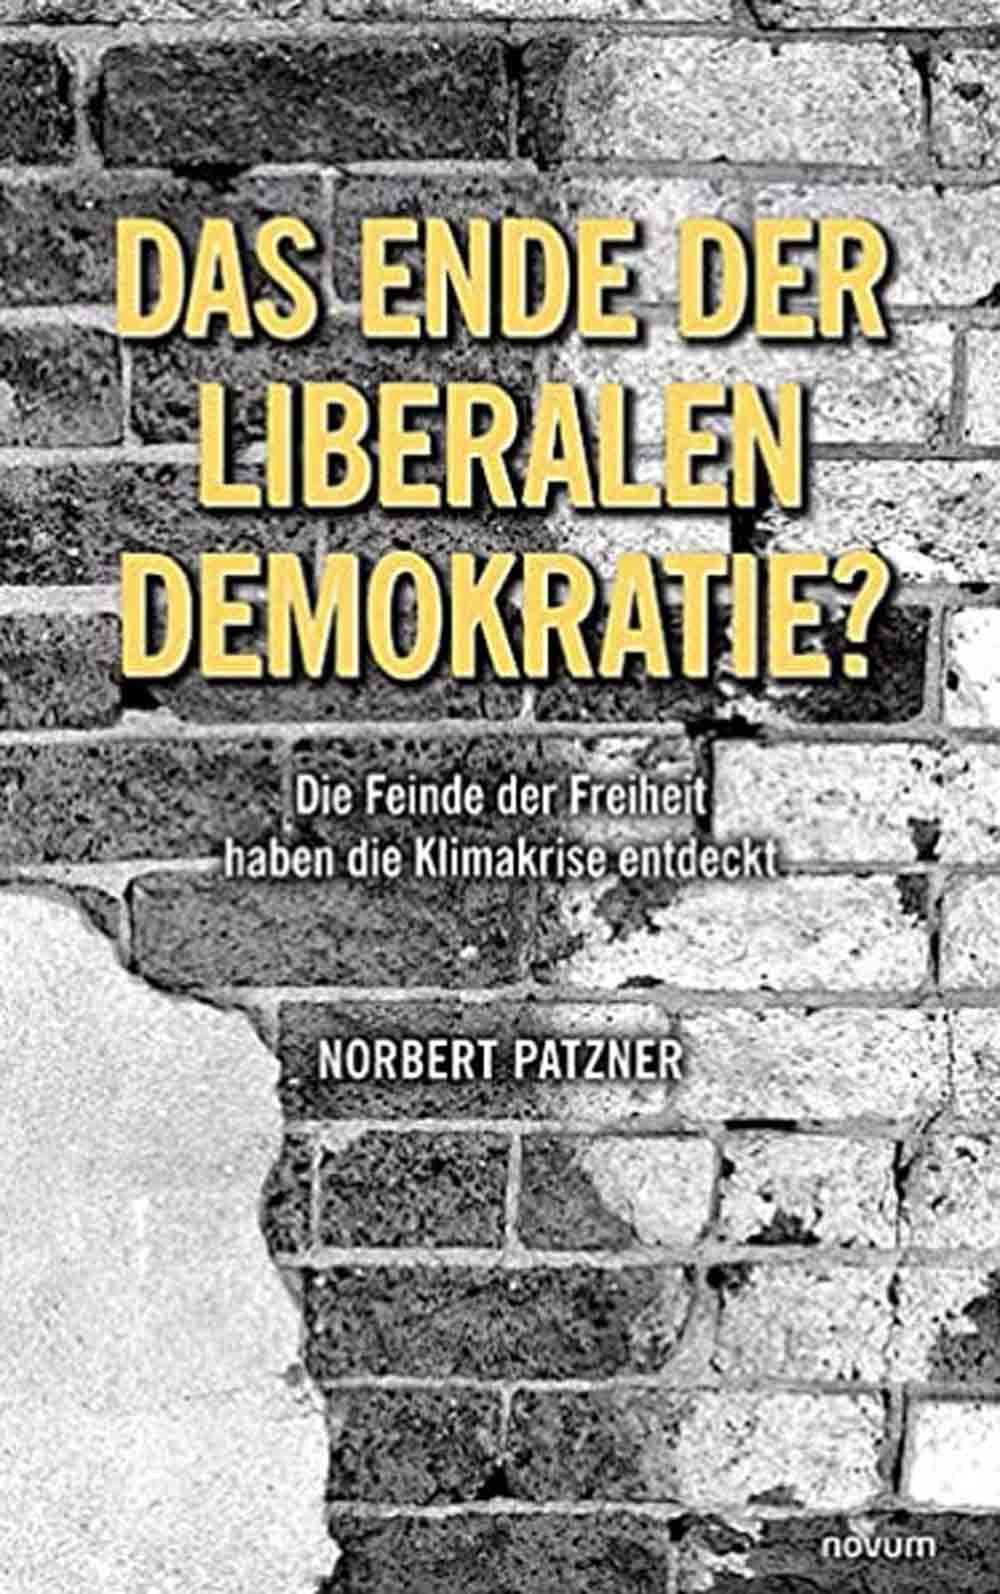 Lesetipps für Gütersloh, Norbert Patzner, »Das Ende der liberalen Demokratie?«